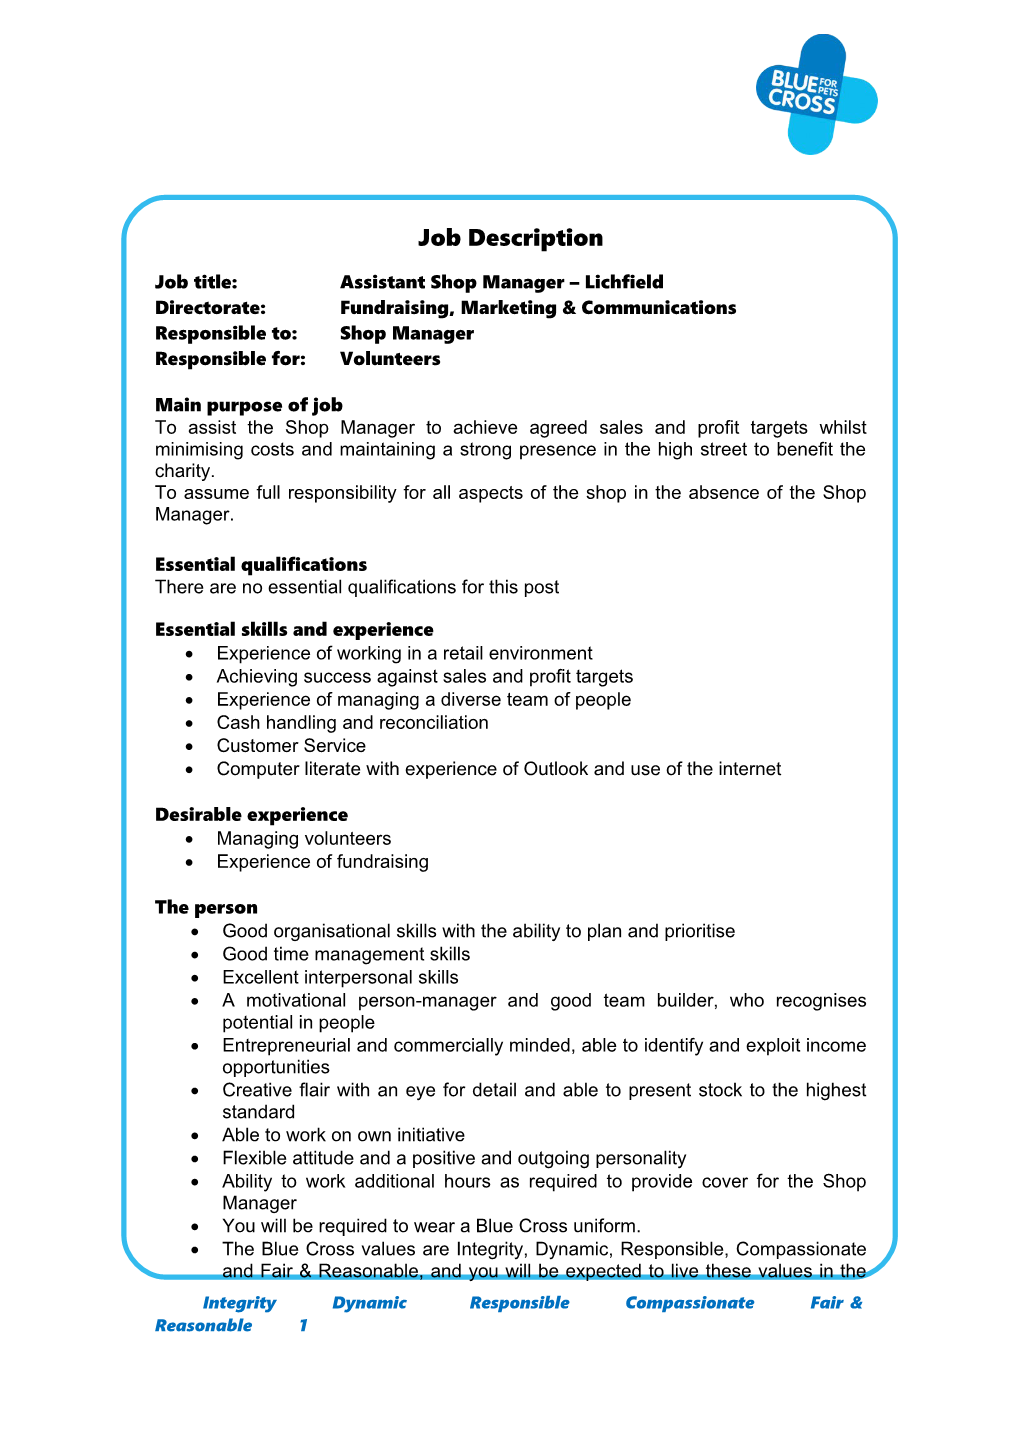 Recruitment Requisition Form